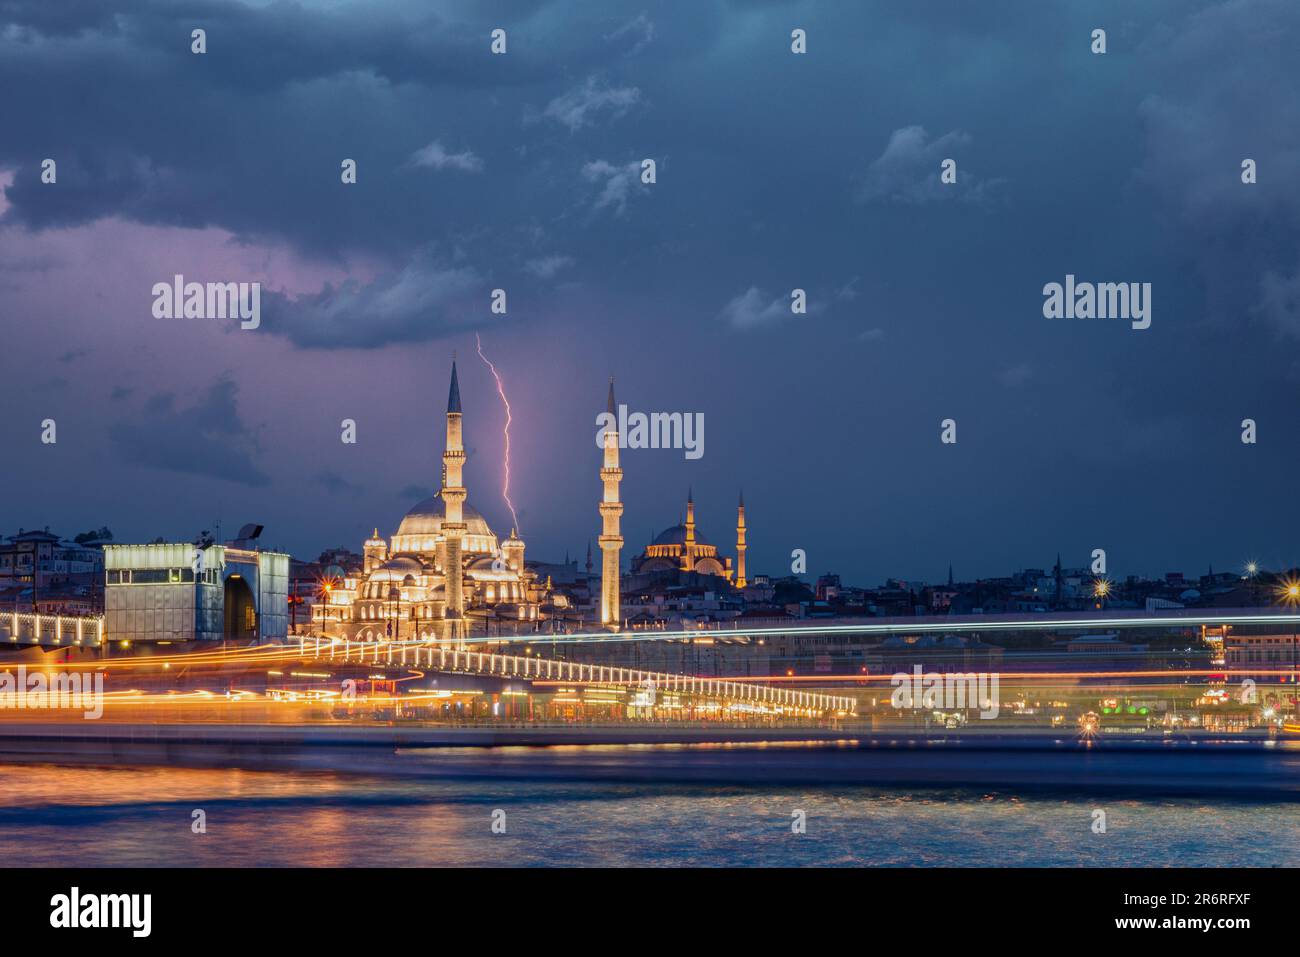 Dramatische Stadtlandschaft in Istanbul - Panoramablick auf die Moschee mit der Fähre während eines Sturms mit Blitzen über der Suleyman-Moschee. Landkappen mit Langzeitbelichtung Stockfoto